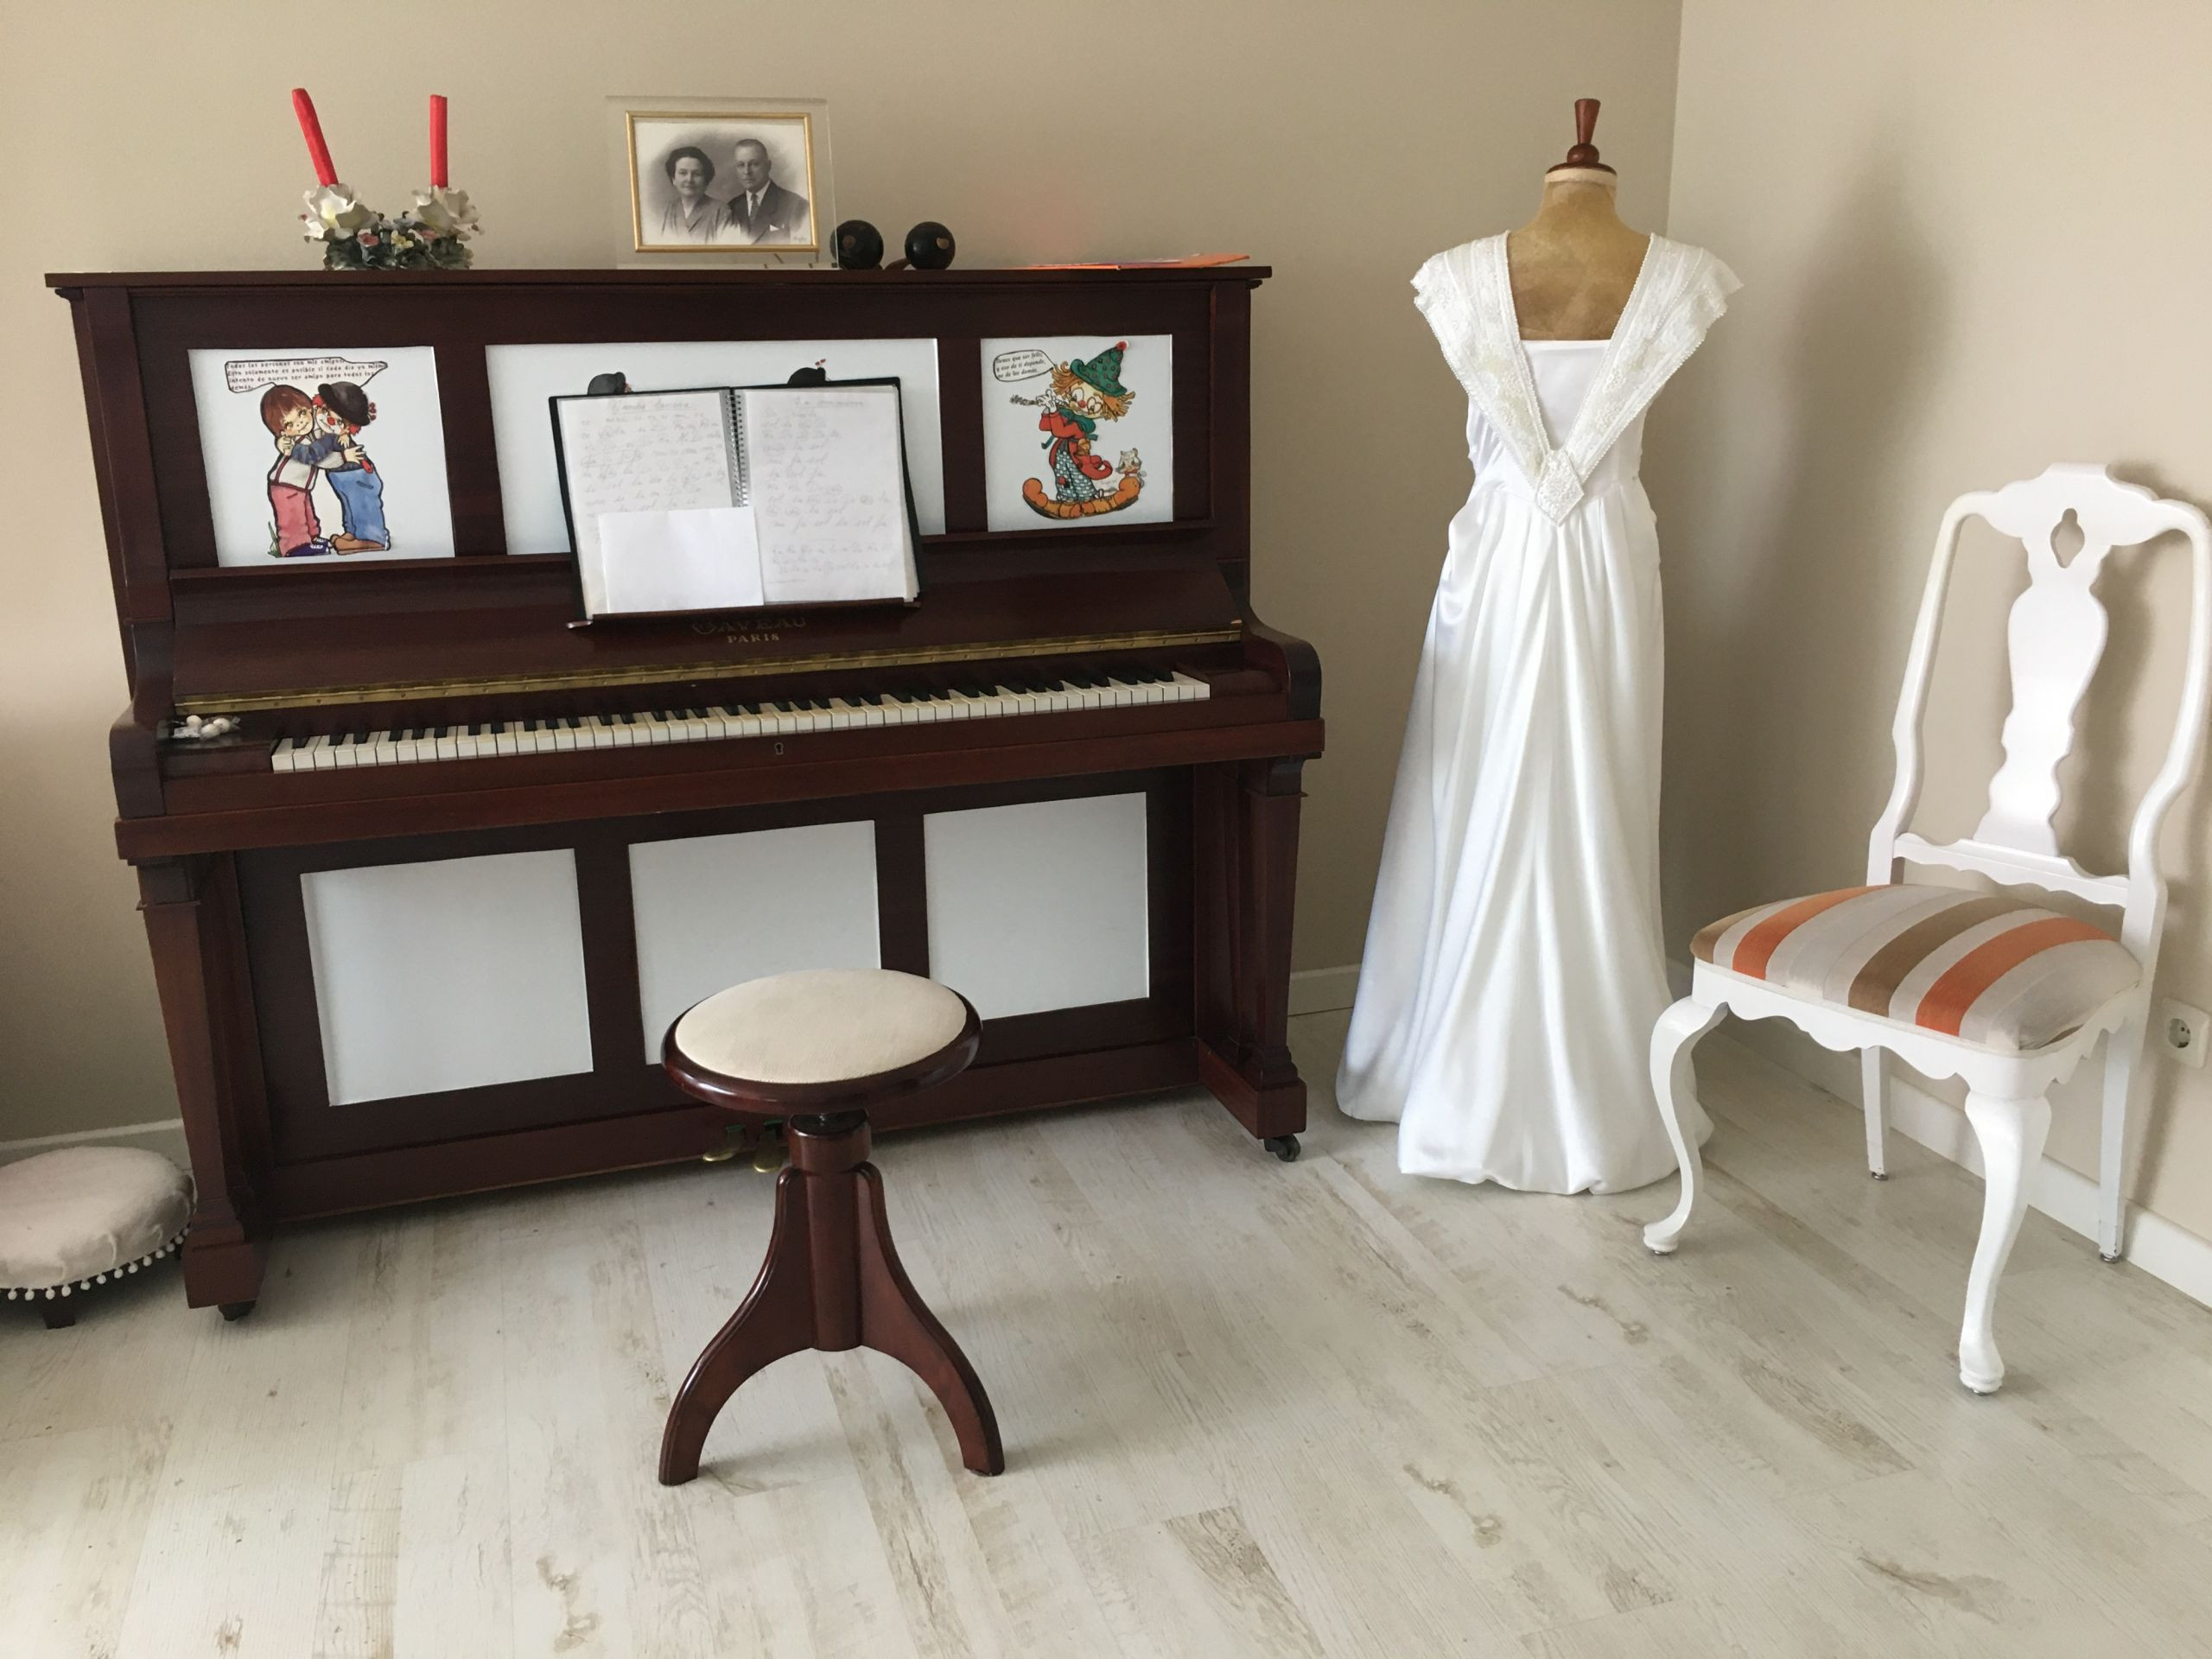 Loli guarda en su casa dos de los vestidos de novia de sus hijas, que ella misma bordó, y el piano que toca cada mañana